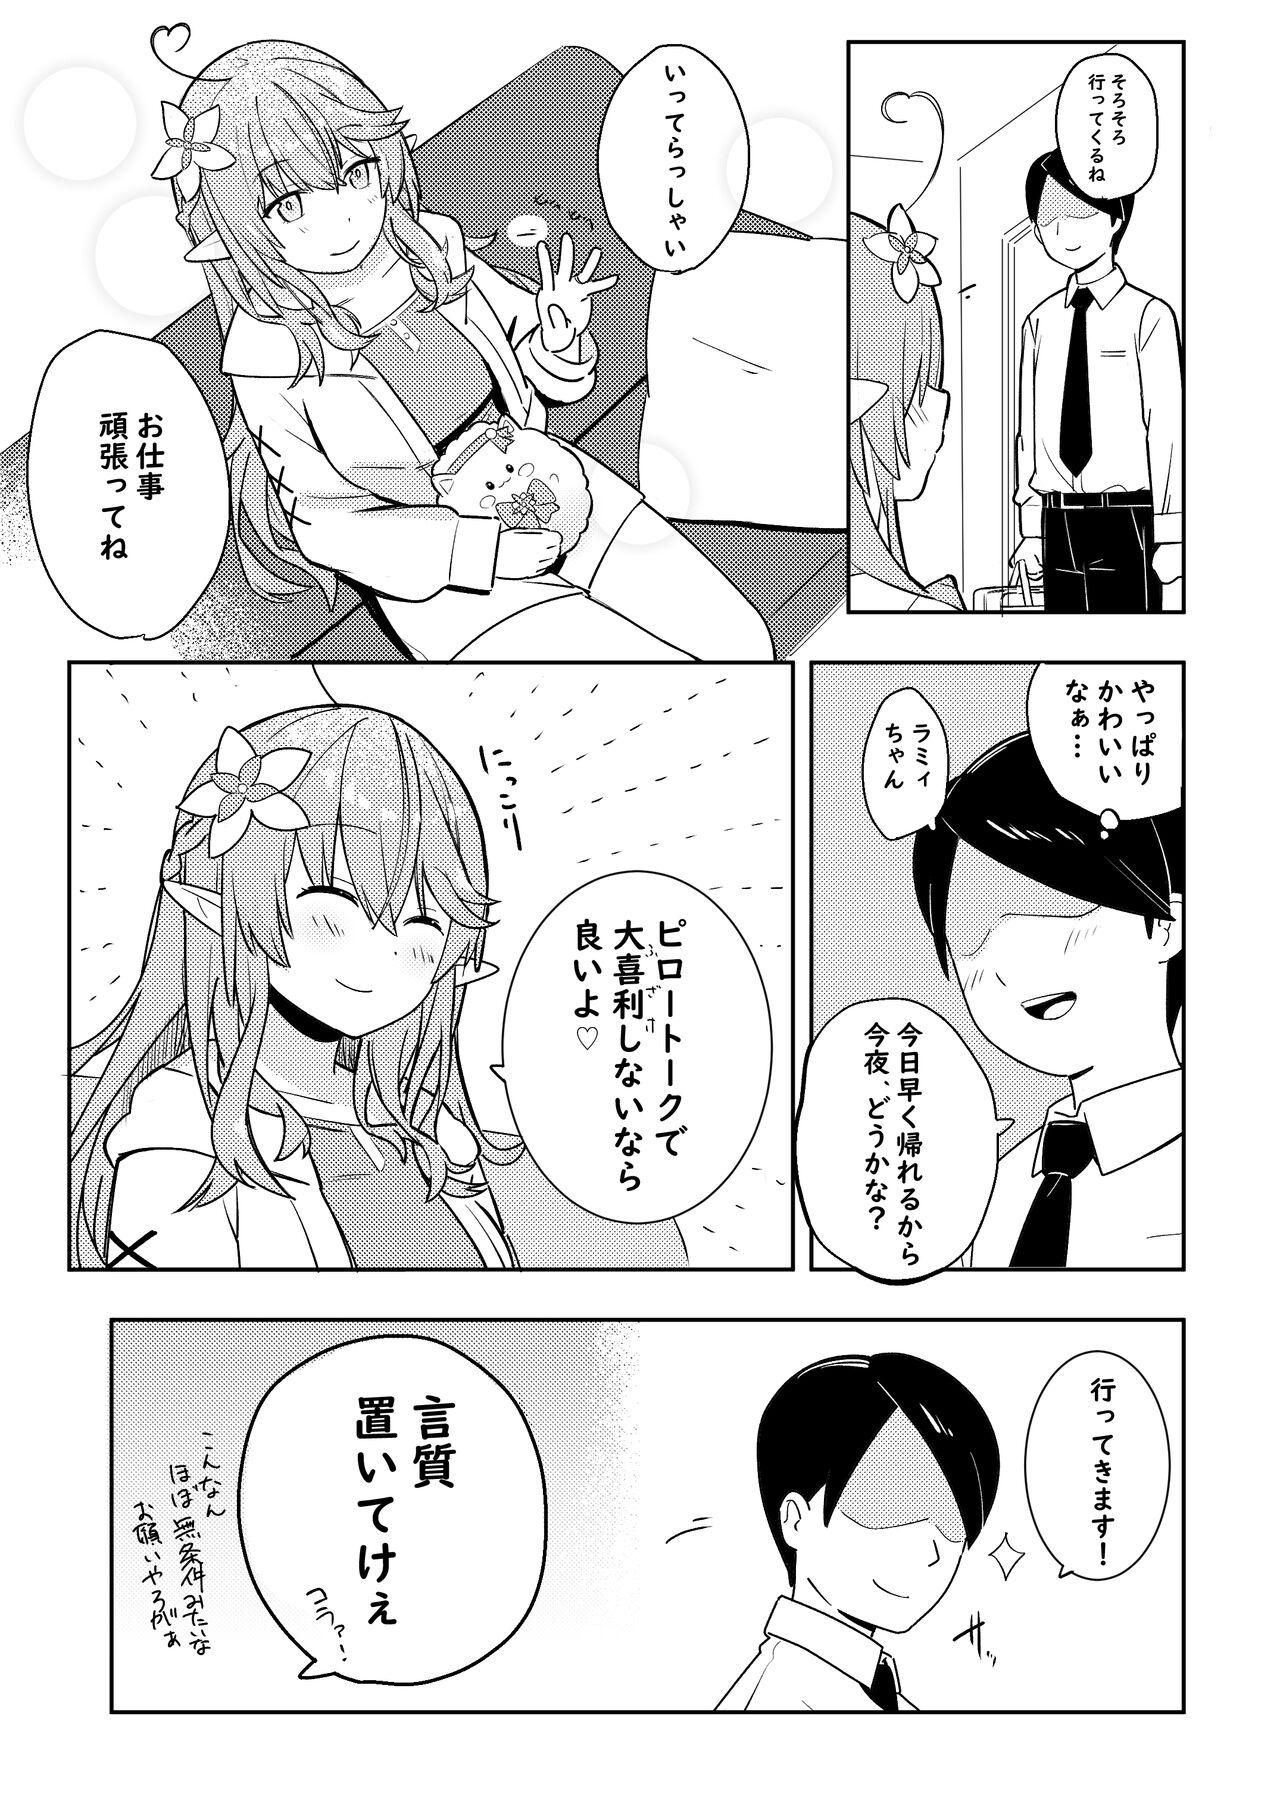 Blowing Twitter Short Manga - Hololive Rabuda - Page 4